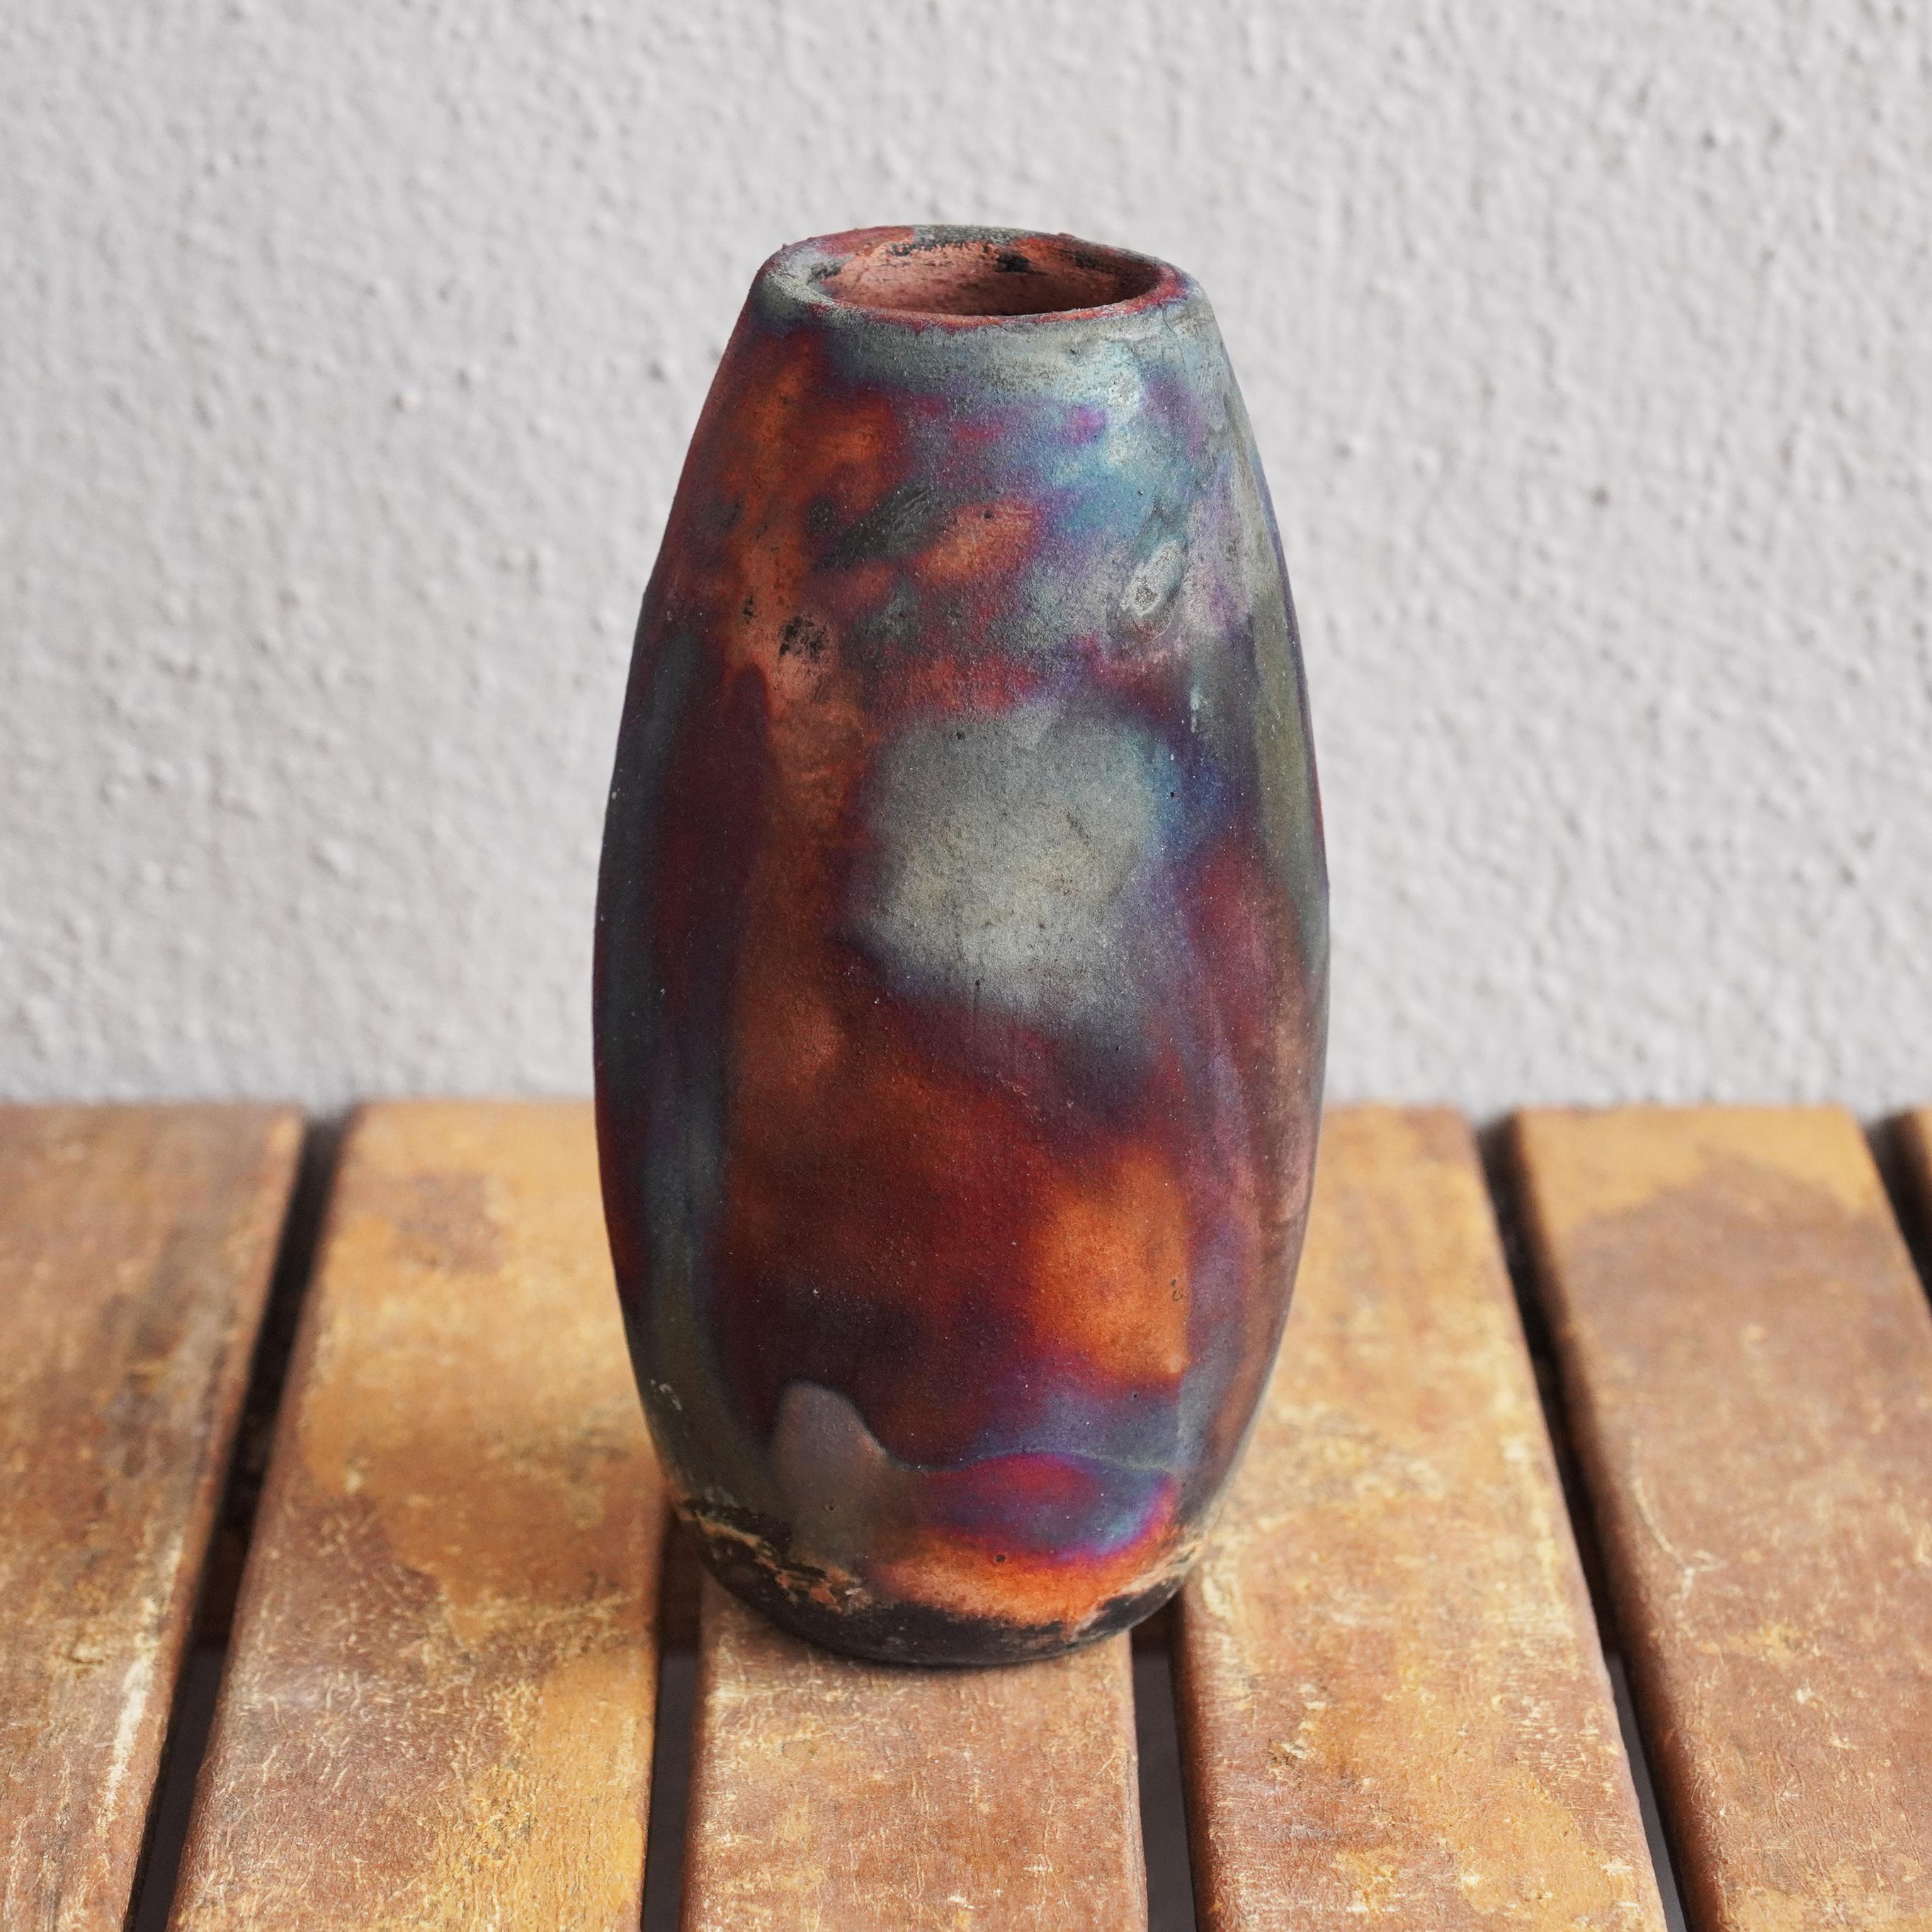 Tsuri ( ツリー ) ~  (n) arbre

Notre vase Tsuri est basé sur la forme classique d'une bouteille, mais avec une bouche plus large au sommet. Il serait certainement très beau s'il était associé à d'autres vases RAAQUU BASICS.

Vous pouvez décorer votre